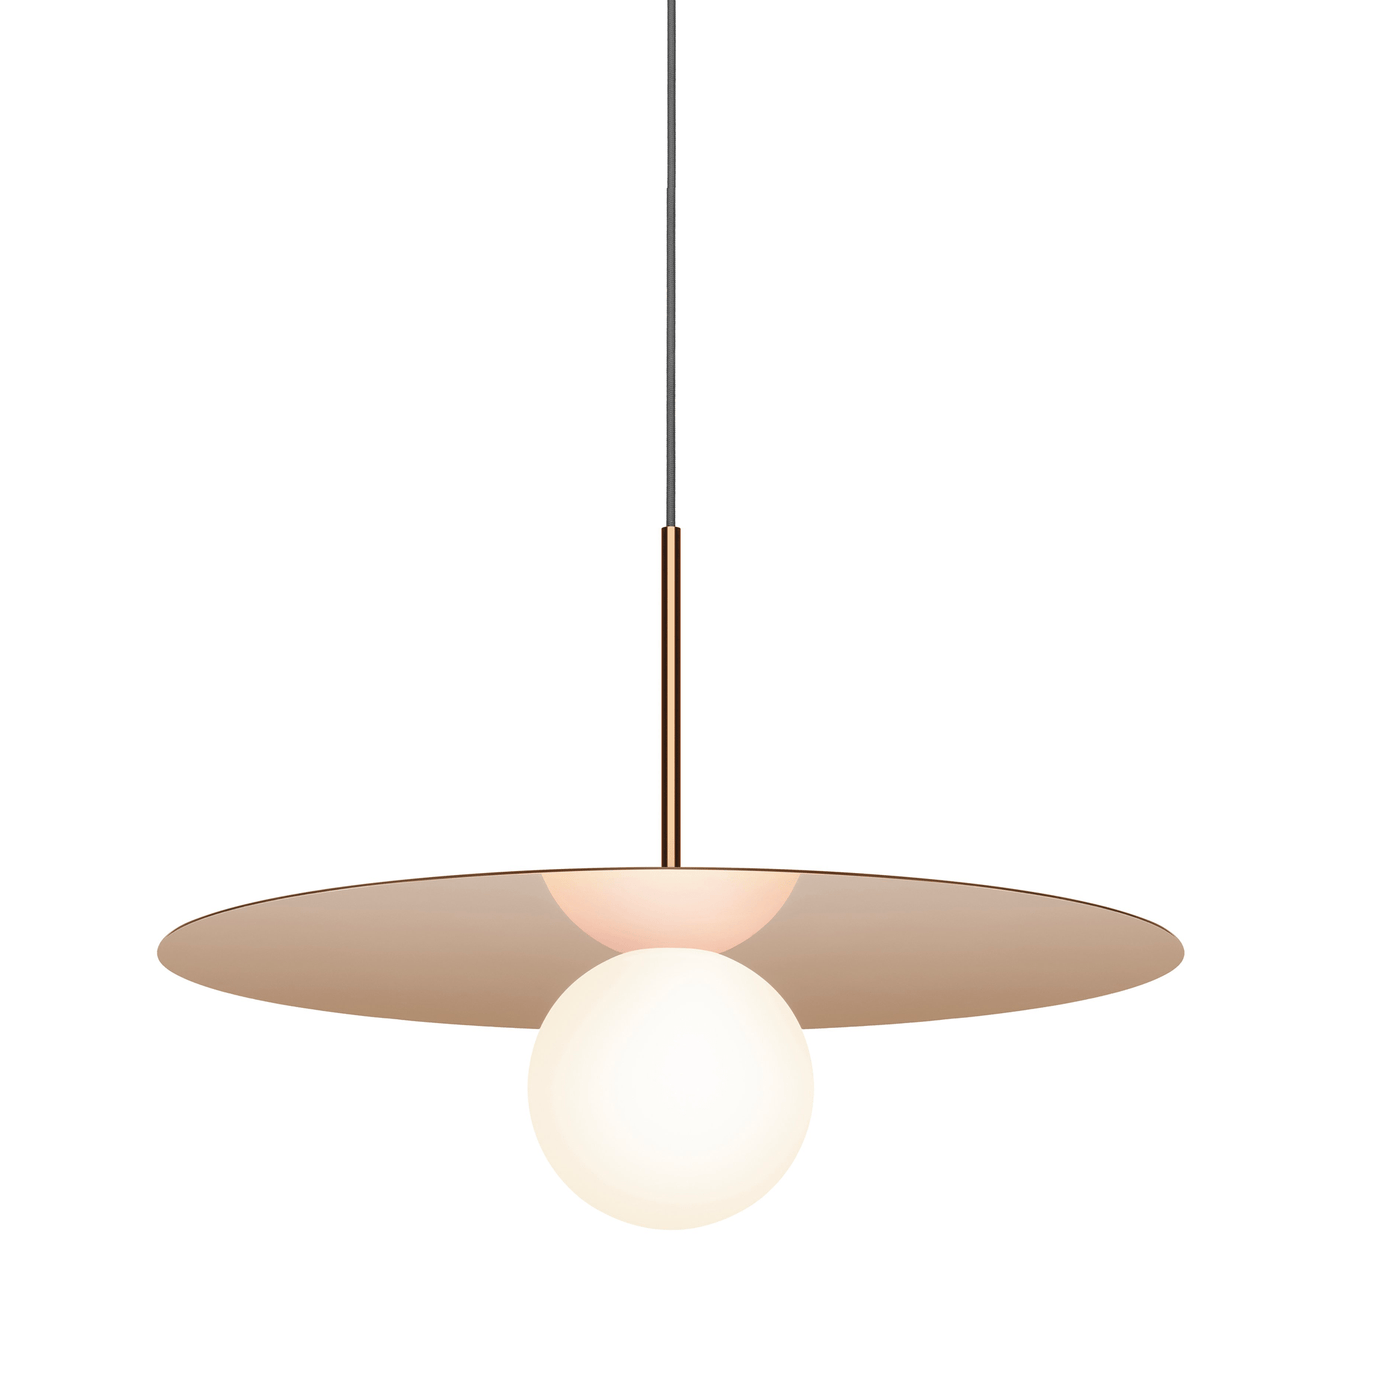 Pablo Designs Bola Disc, lampe suspendue LED avec un globe en verre et un abat-jour en forme de disque, en aluminium, or rose, 22ʼʼ